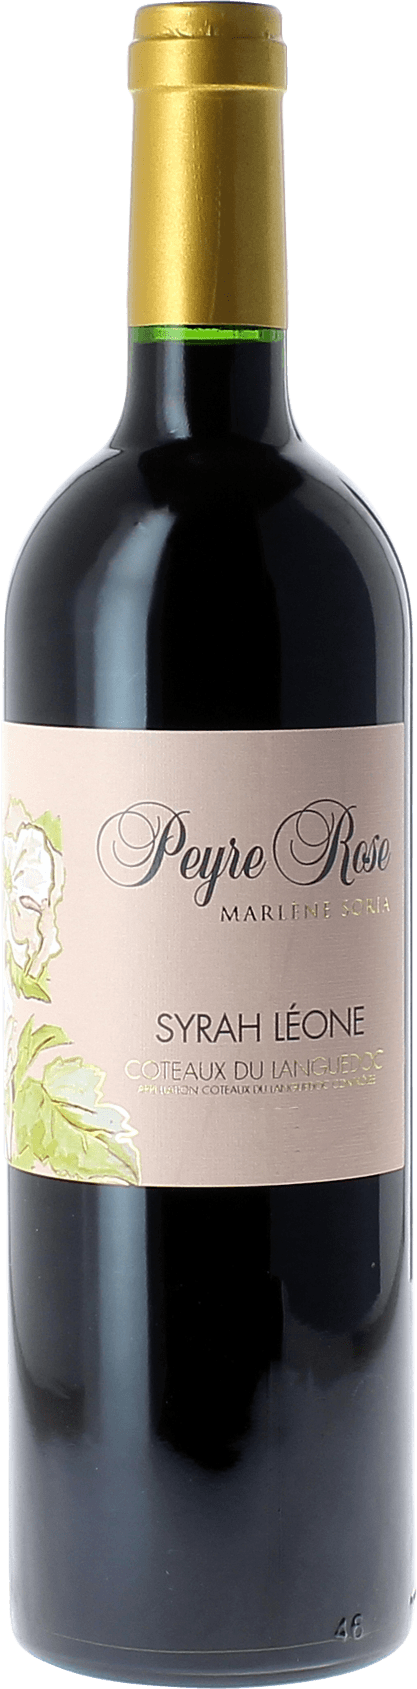 Peyre rose syrah leone 2002  Coteaux du languedoc AOC, Languedoc rouge